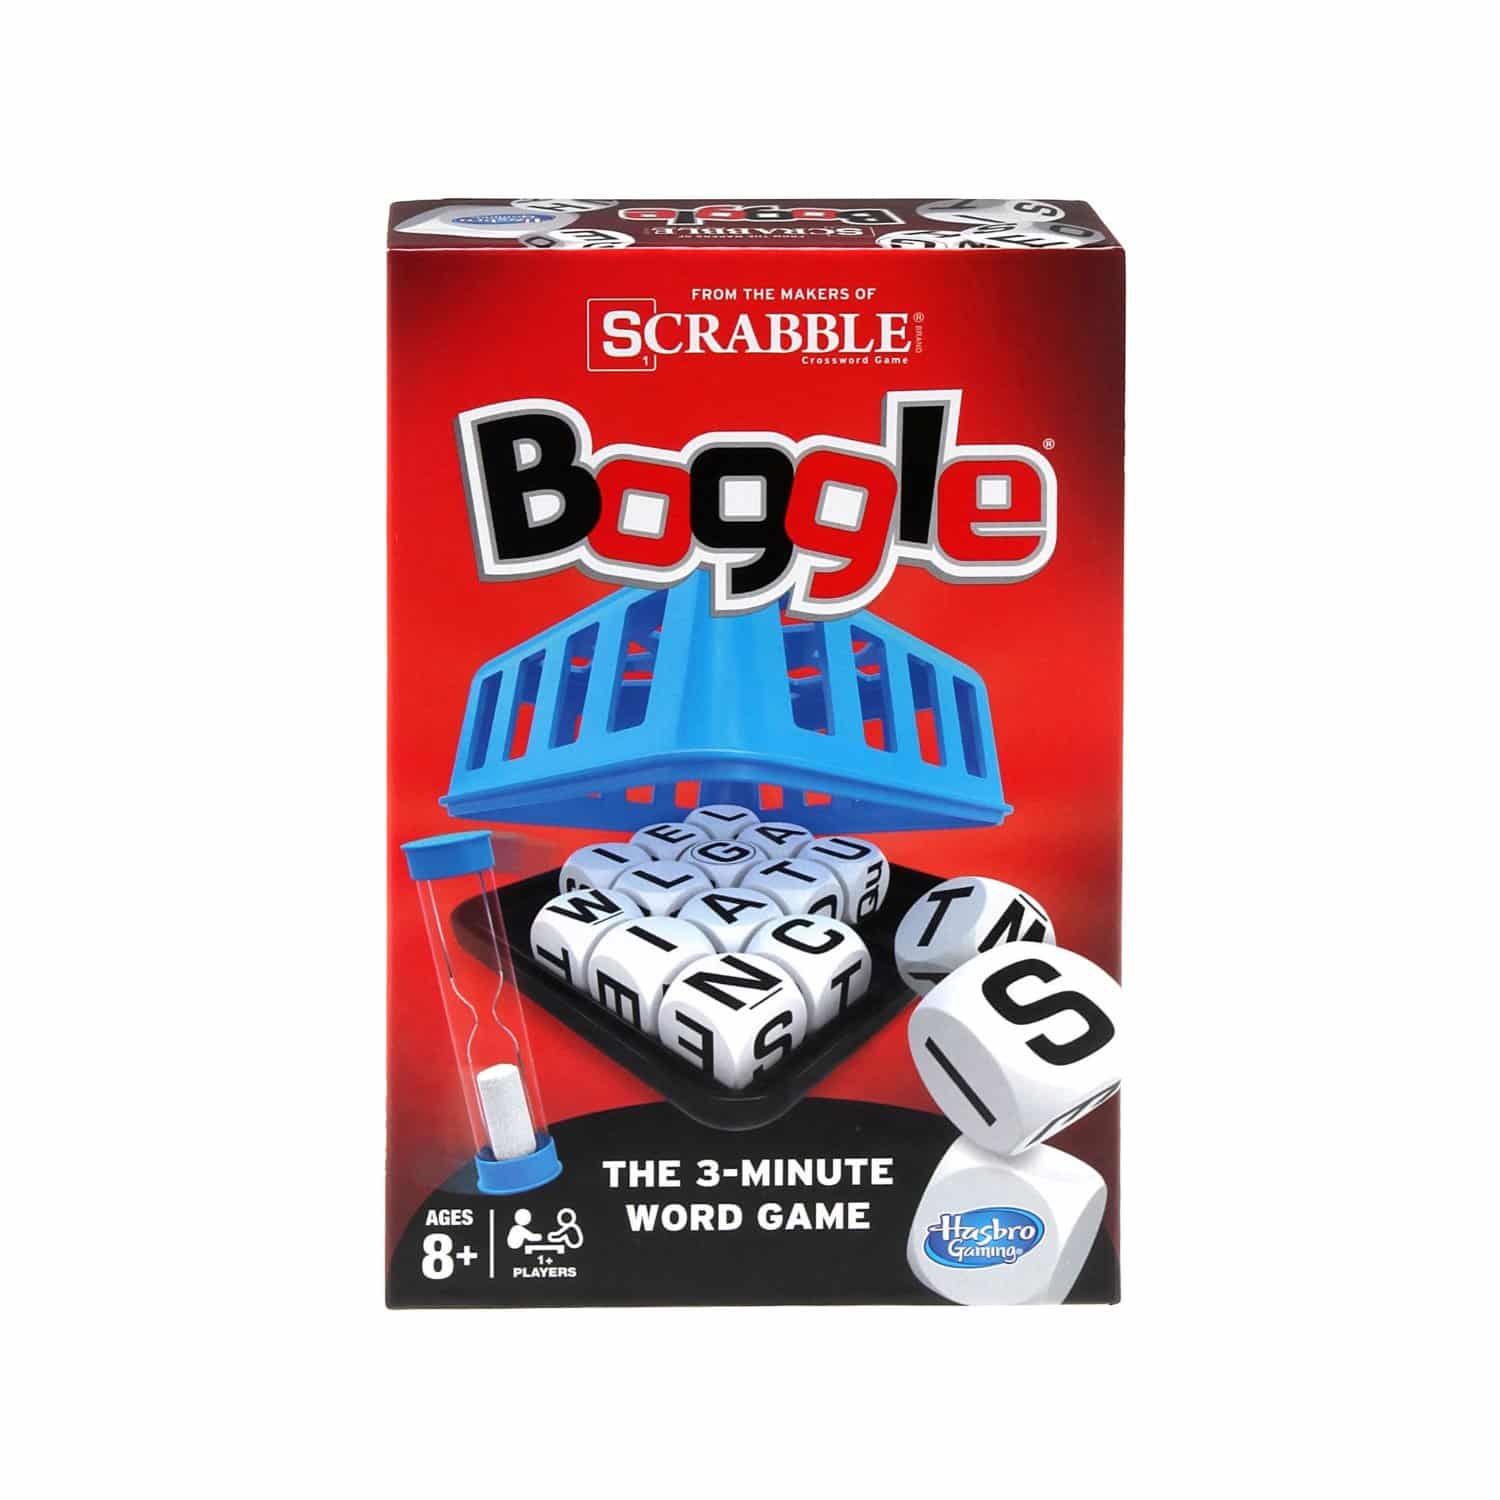 LIGHTNING DEAL ALERT! Scrabble Boggle Game 25% off